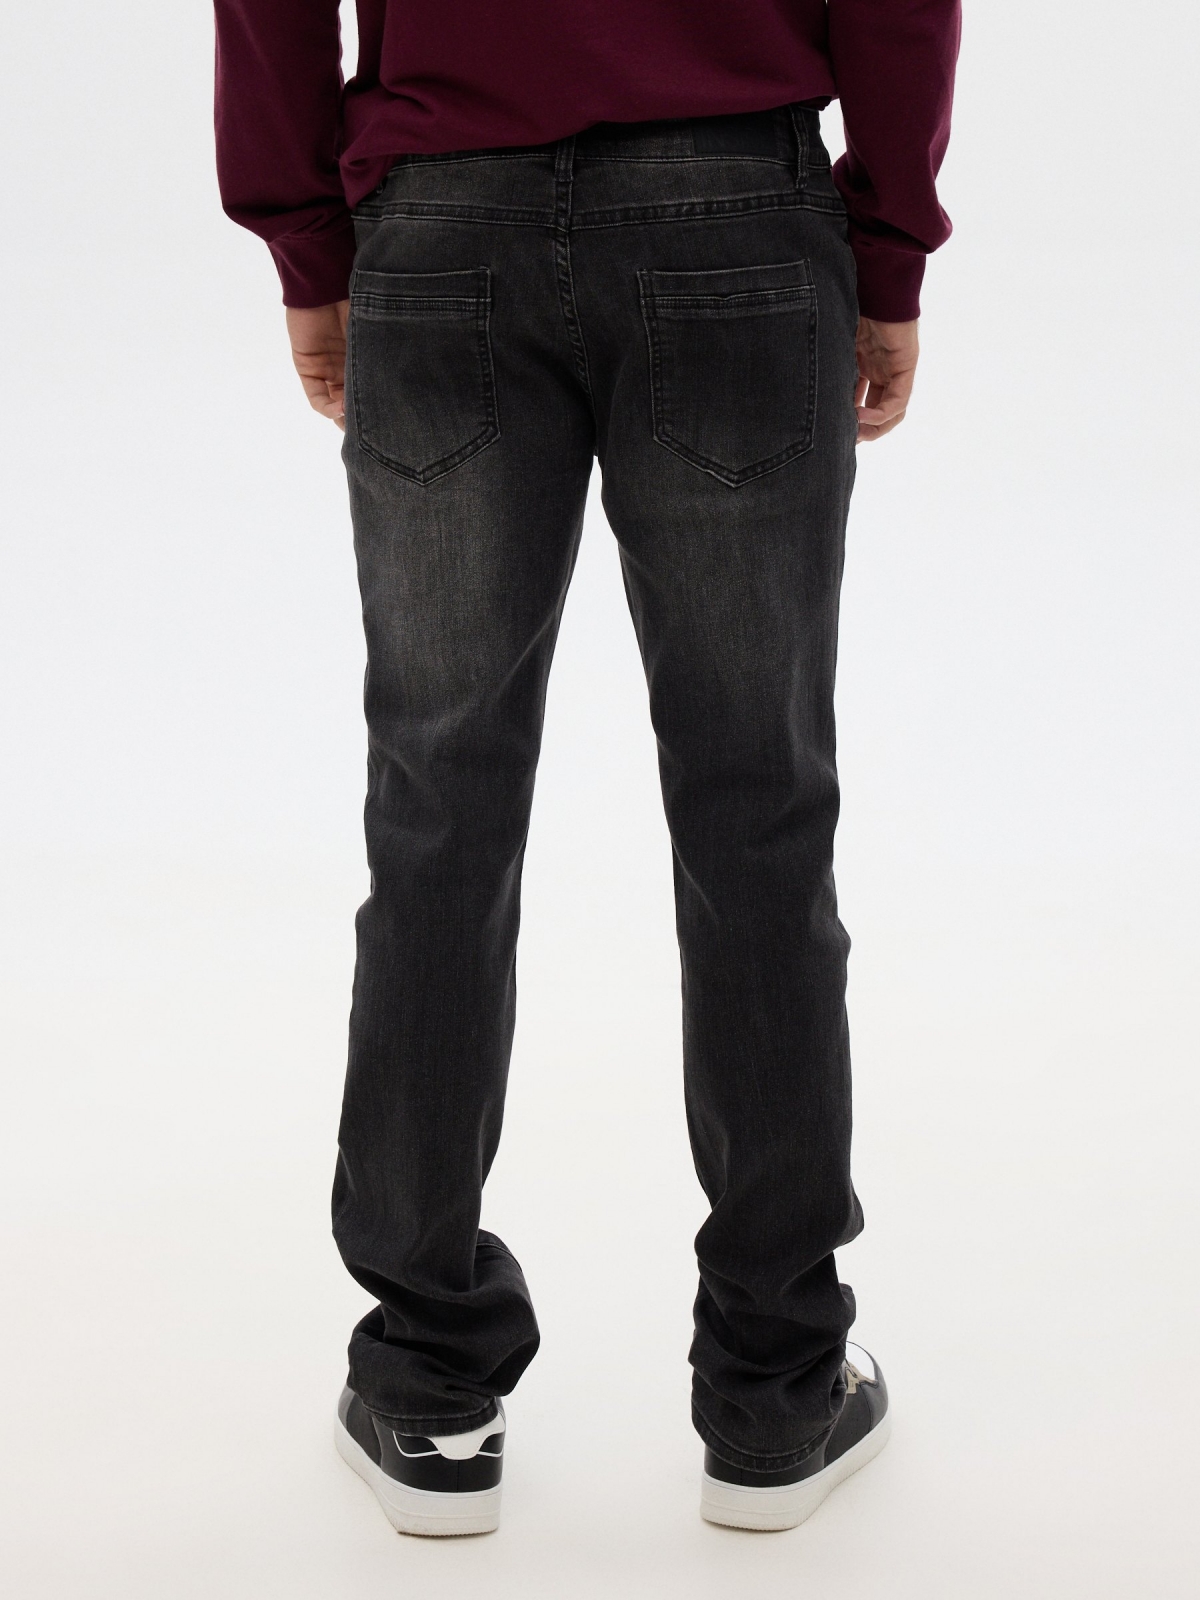 Regular jeans black middle back view